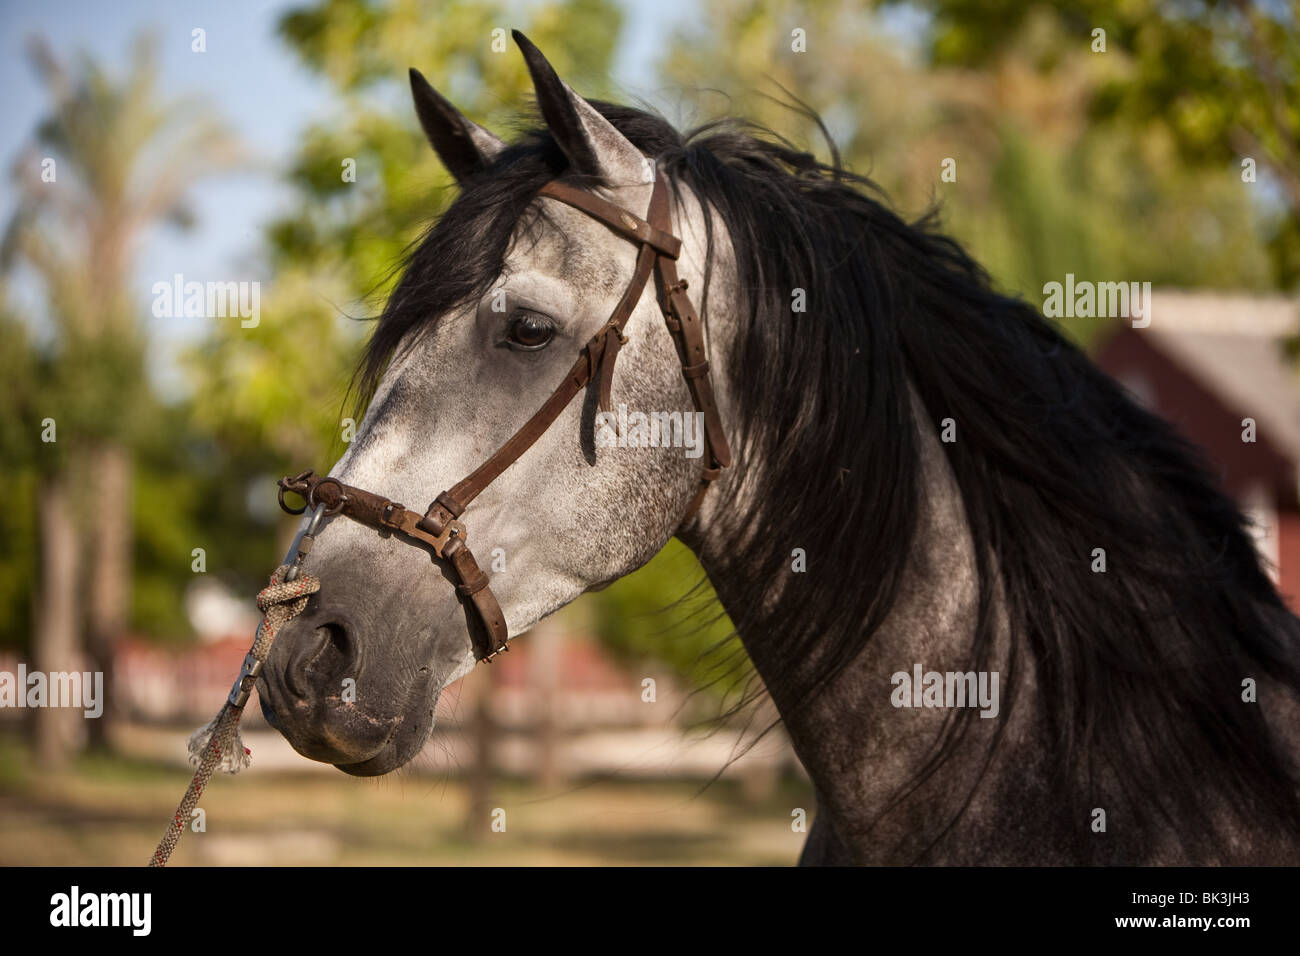 Spanish purebred horse Stock Photo